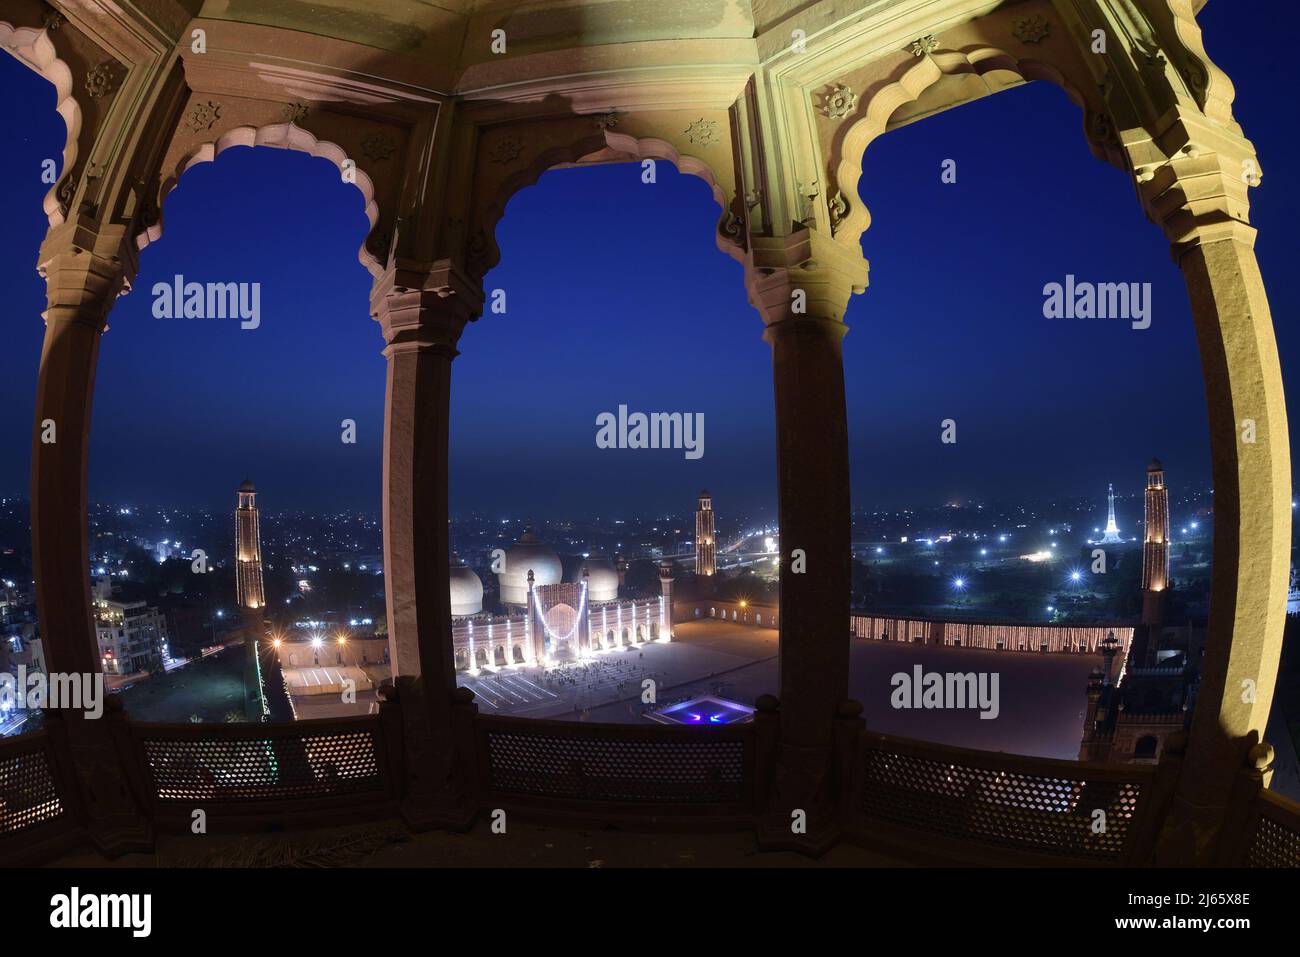 Una splendida e attraente vista aerea della storica moschea Badshahi dell'era Mughal decorata con luci per segnare la notte Santa e cercare le benedizioni divine di Lailatul Qadr, anche conosciuta come la Notte del potere a Lahore. Laylat ul Qadr o comunemente noto come Shab-e-Qadr, la "Notte del potere" è piena di benedizioni perché l'eminente Corano discese in esso, i fedeli musulmani arrivano ad offrire preghiere serali 27th notte del mese Santo del Ramadan in una Moschea Badshahi illuminata" secondo la tradizione, Quando il libro sacro musulmano, il Corano, fu rivelato al profeta Maometto attraverso l'angelo Gabrie Foto Stock